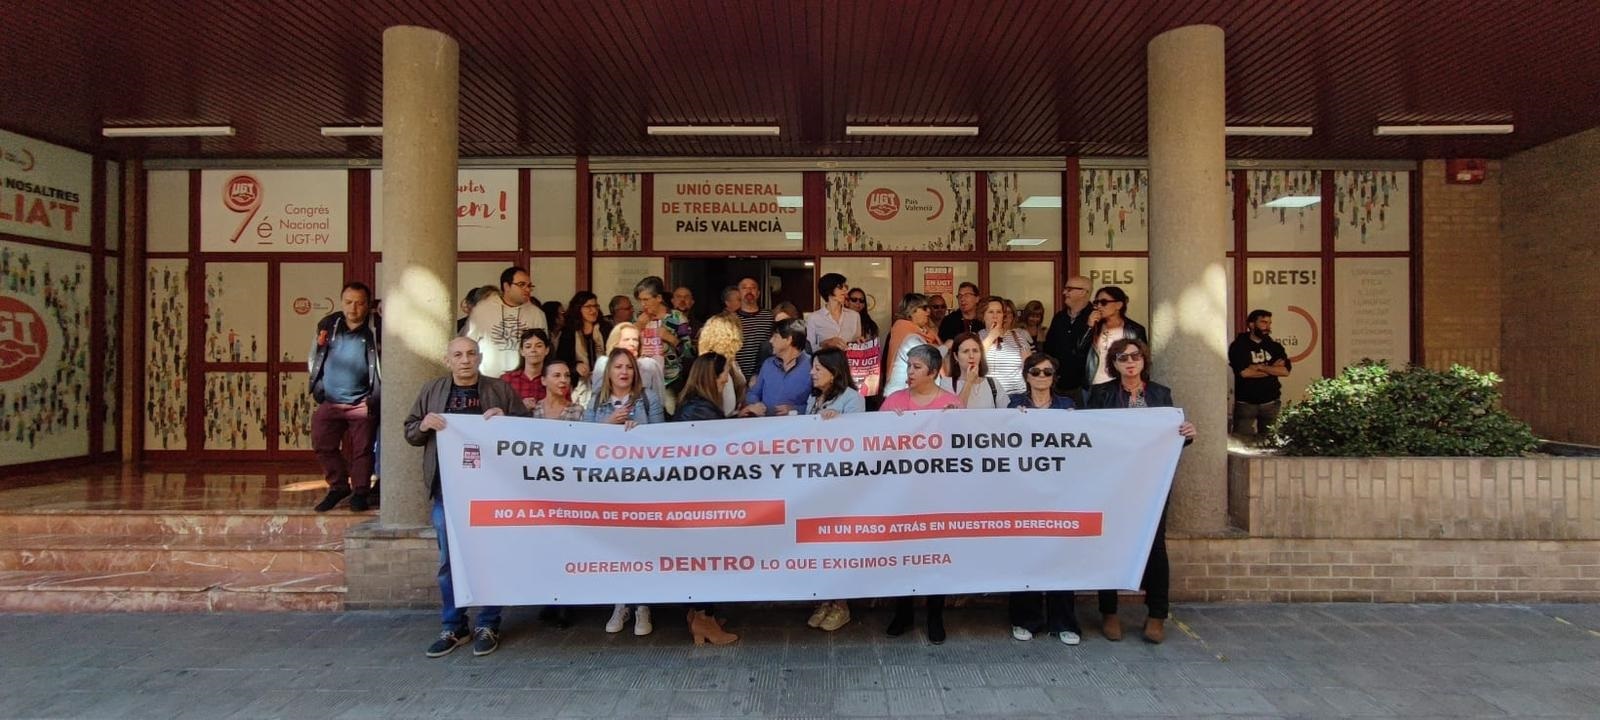 Los trabajadores de UGT se organizan para denunciar su convenio al Ministerio de Trabajo